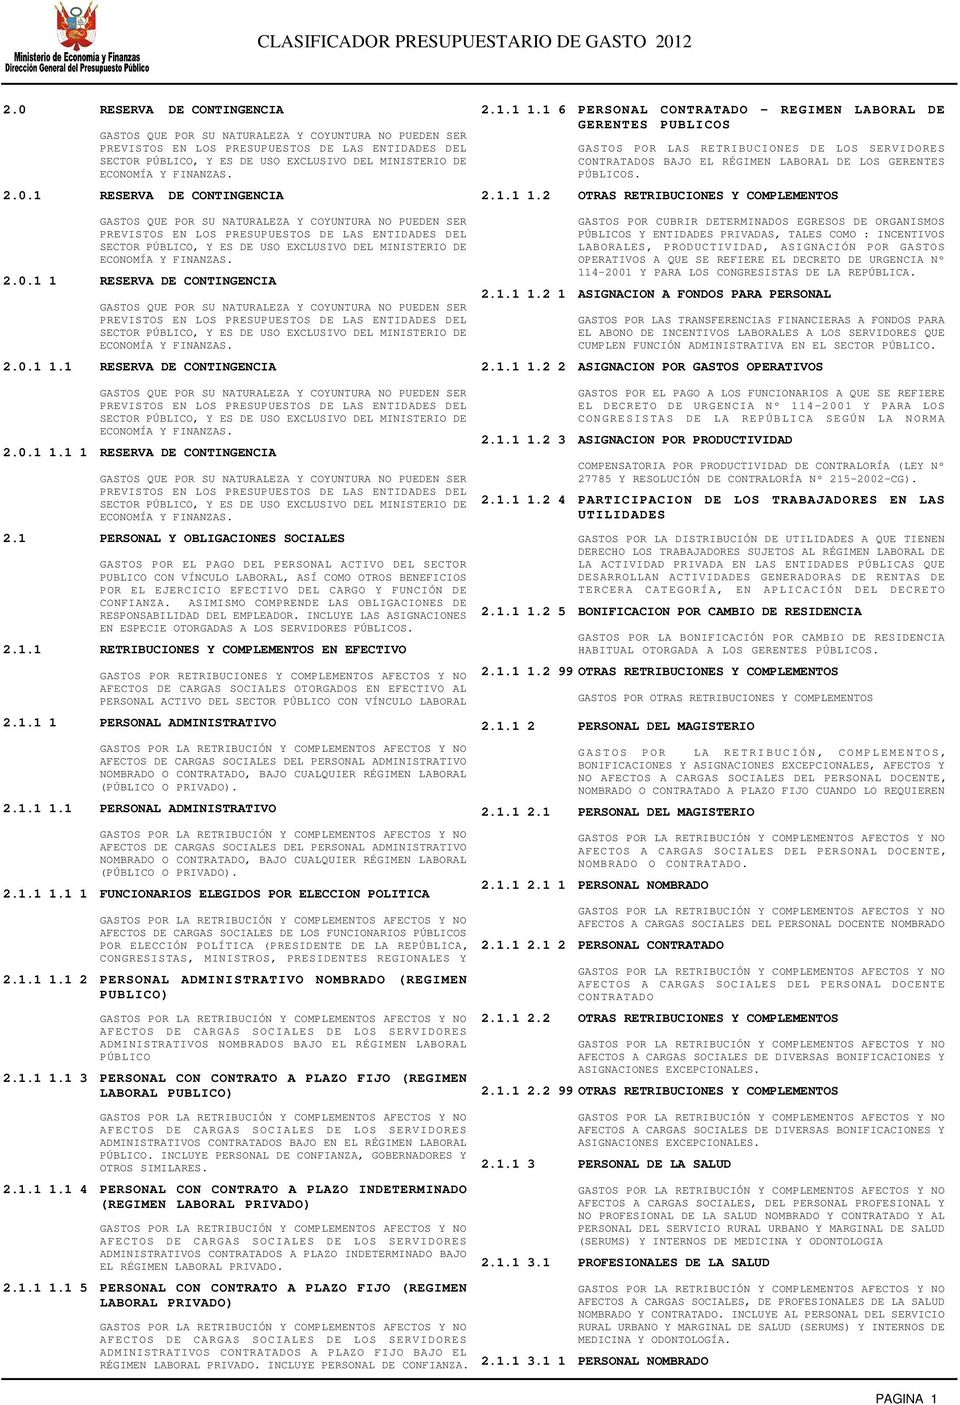 1 RESERVA DE CONTINGENCIA 2.1.1 1.2 OTRAS RETRIBUCIONES Y COMPLEMENTOS 2.0.